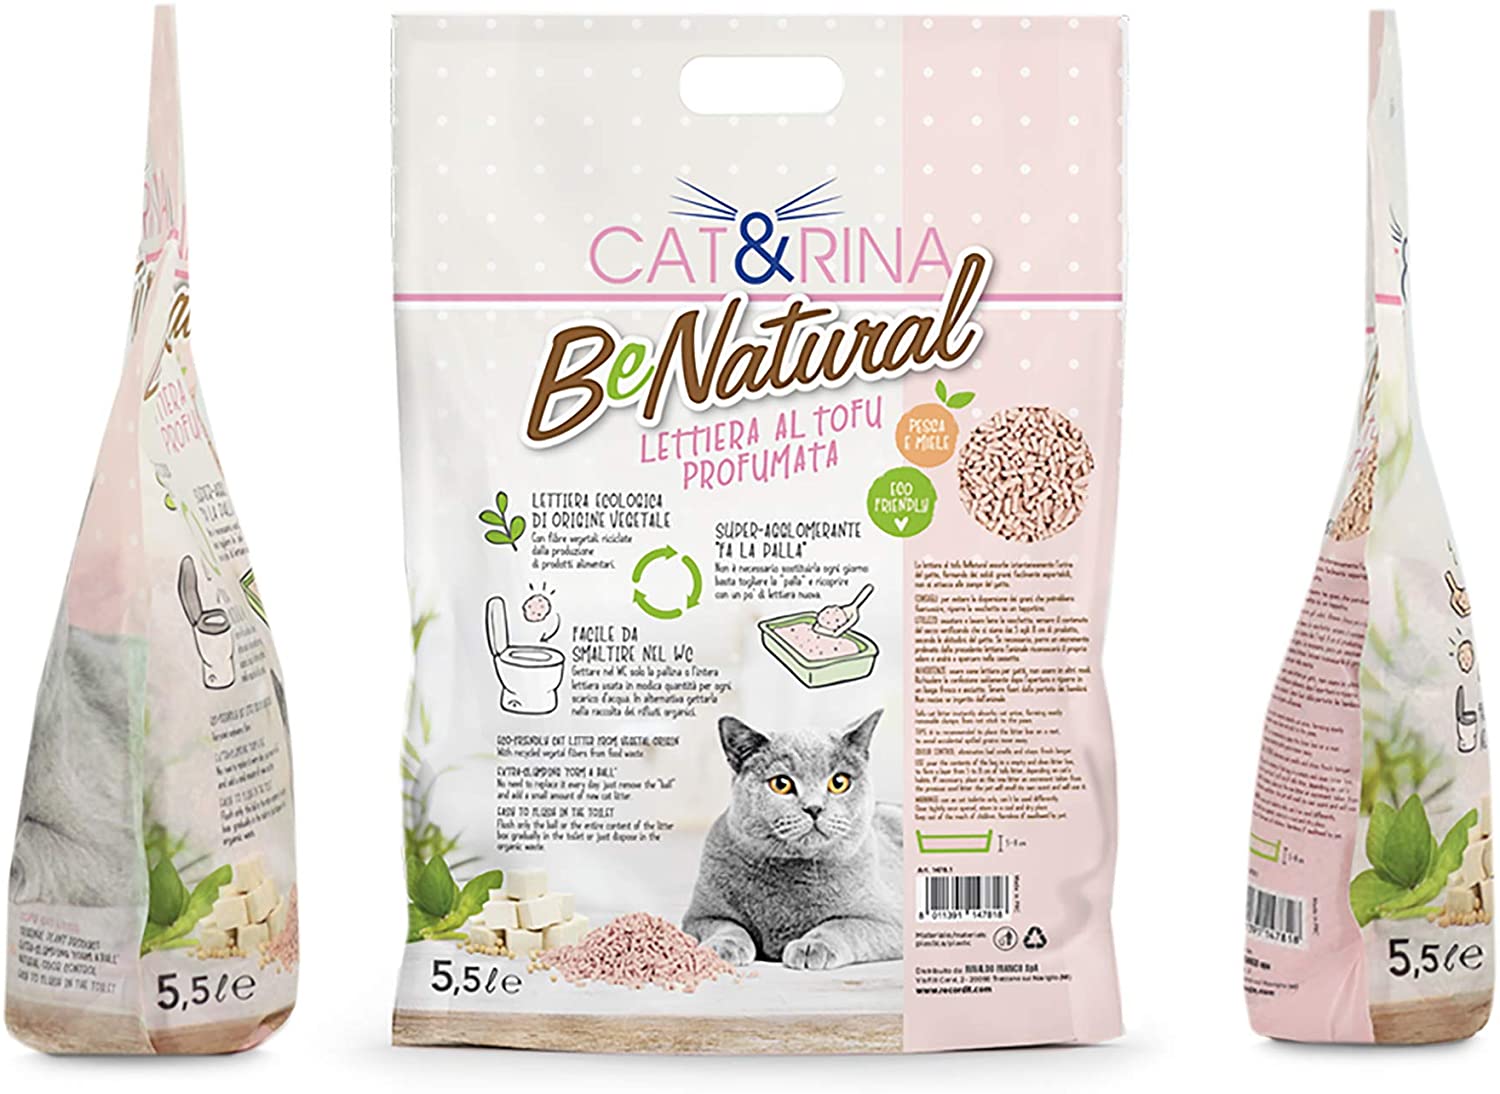 Cat&rina BeNatural Lettiera al Tofu 5,5 Litri - Profumata alla Pesca